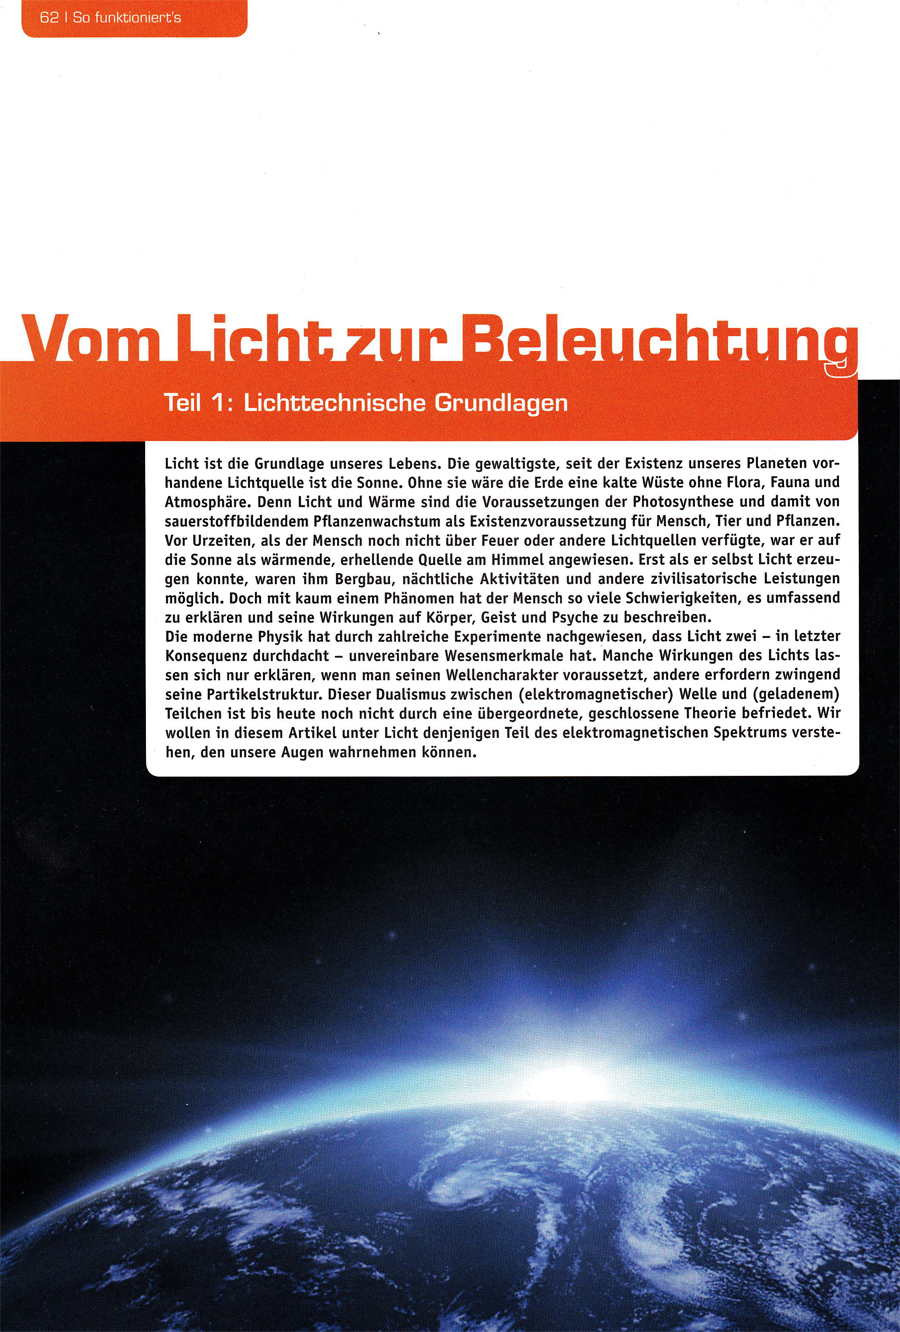 ELV Journal: Vom Licht zur Beleuchtung / Teil 1